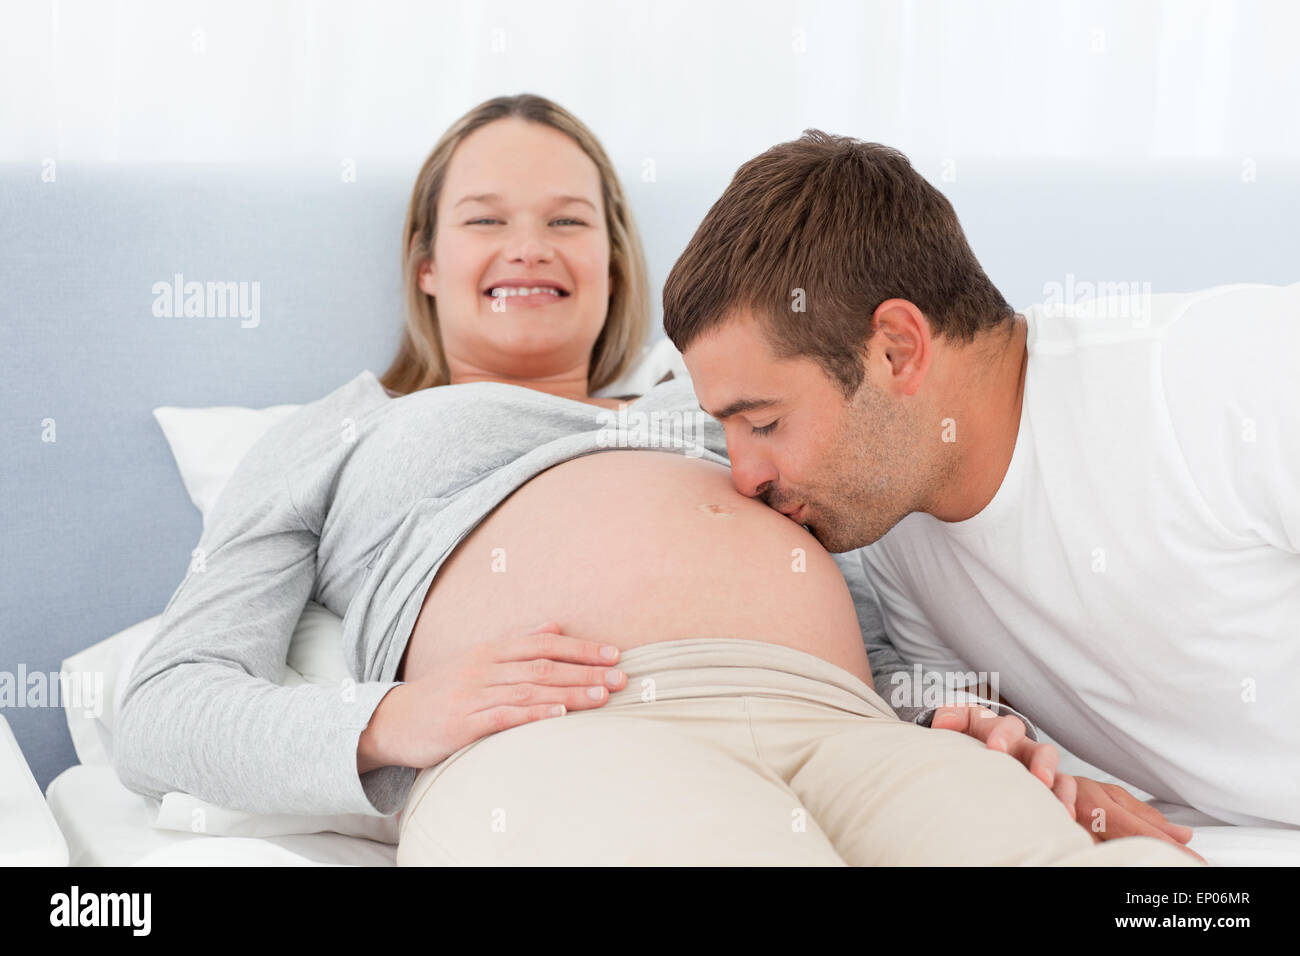 Видео жена забеременела. Муж целует животик беременной жены. Целует живот беременной жены. Объятия беременных. Беременные обнимаются.